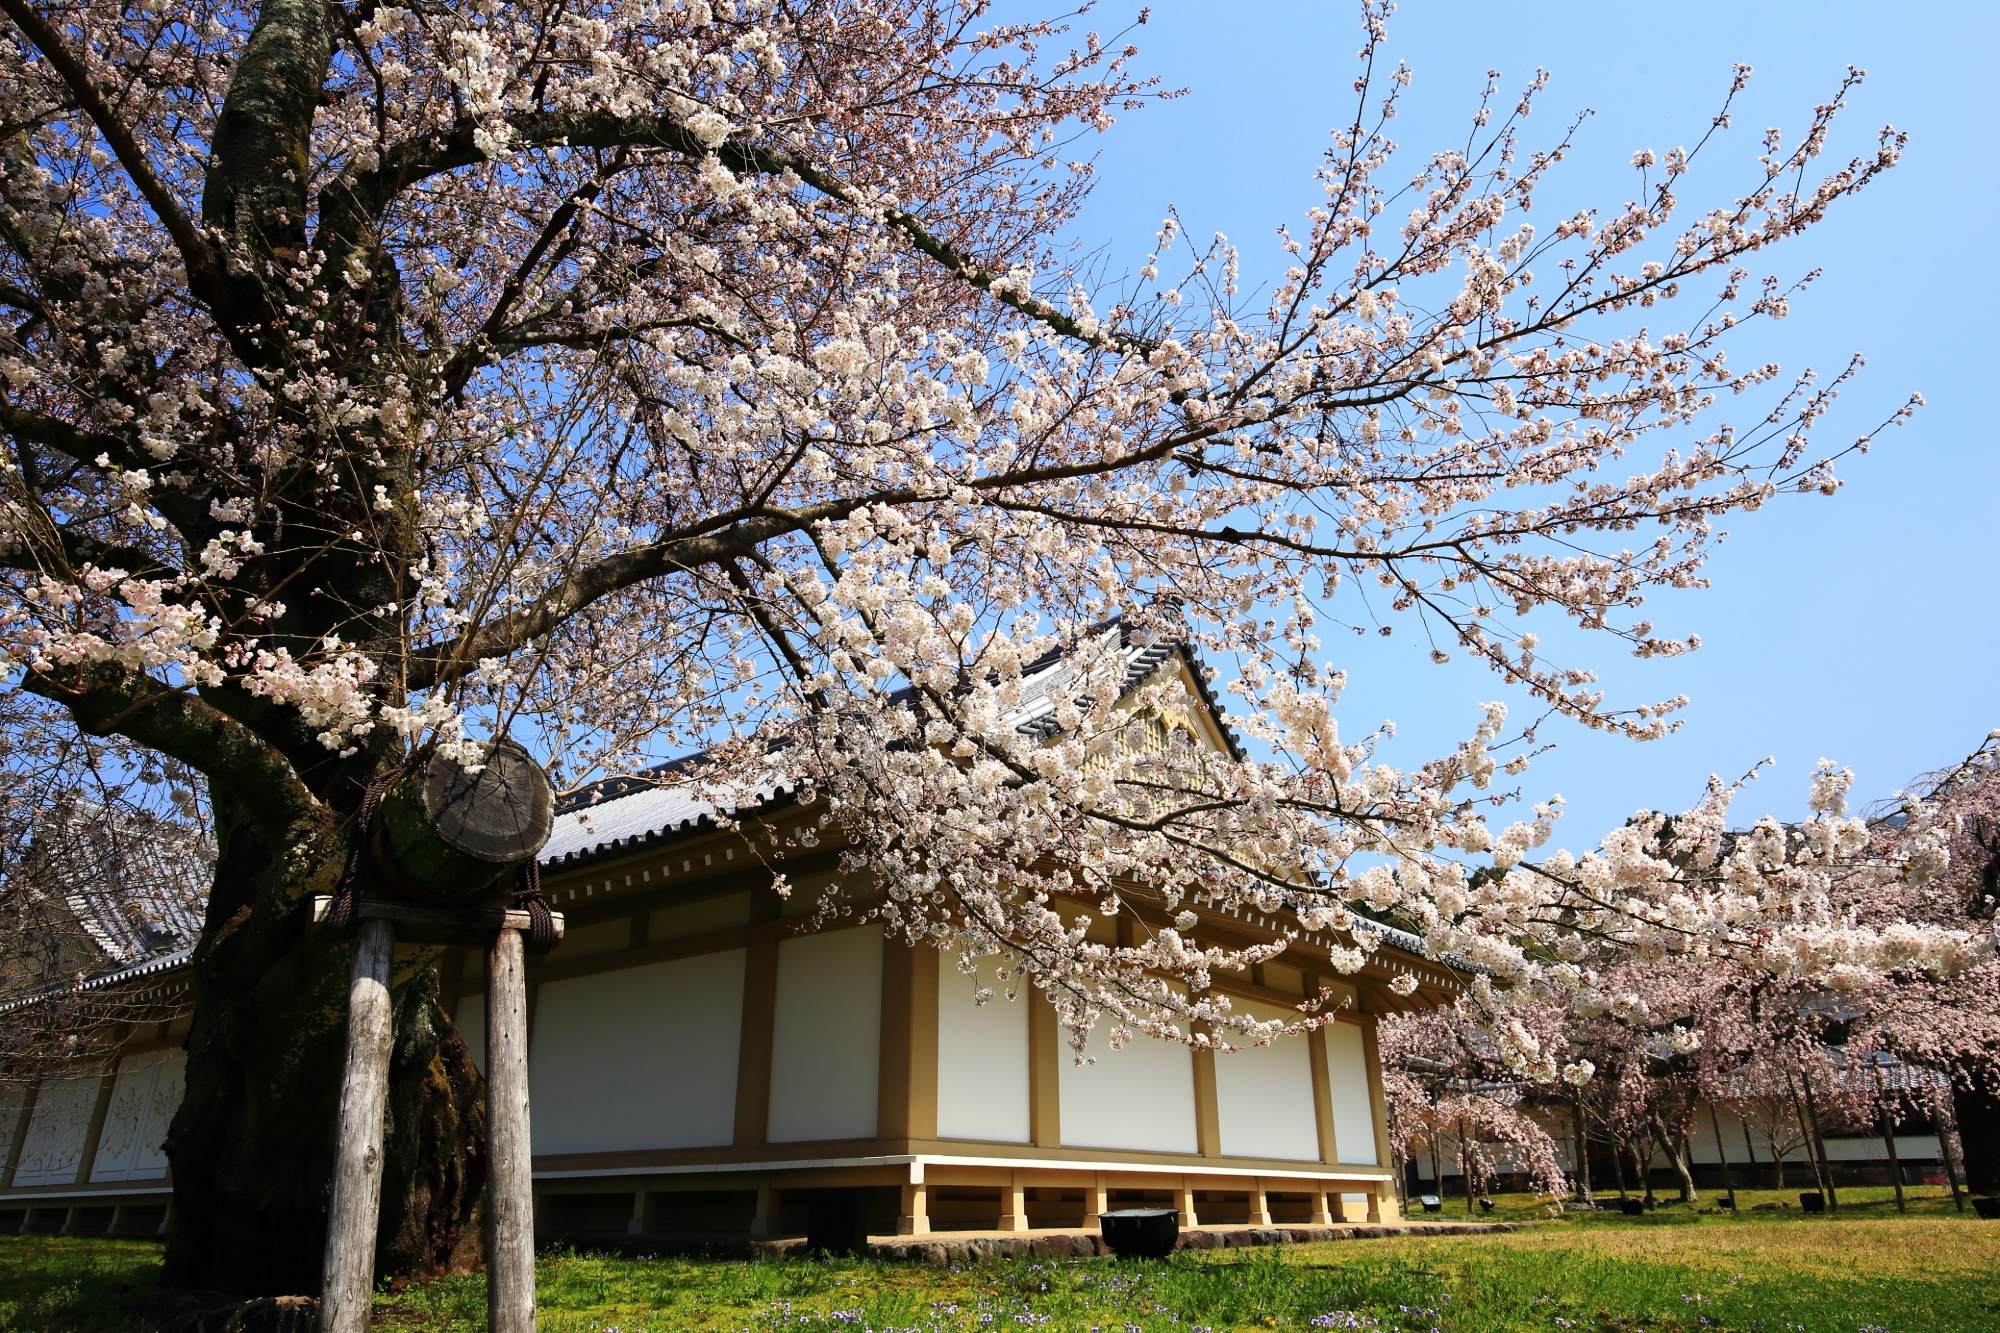 霊宝館の本館前で翼を広げるように咲き誇る桜